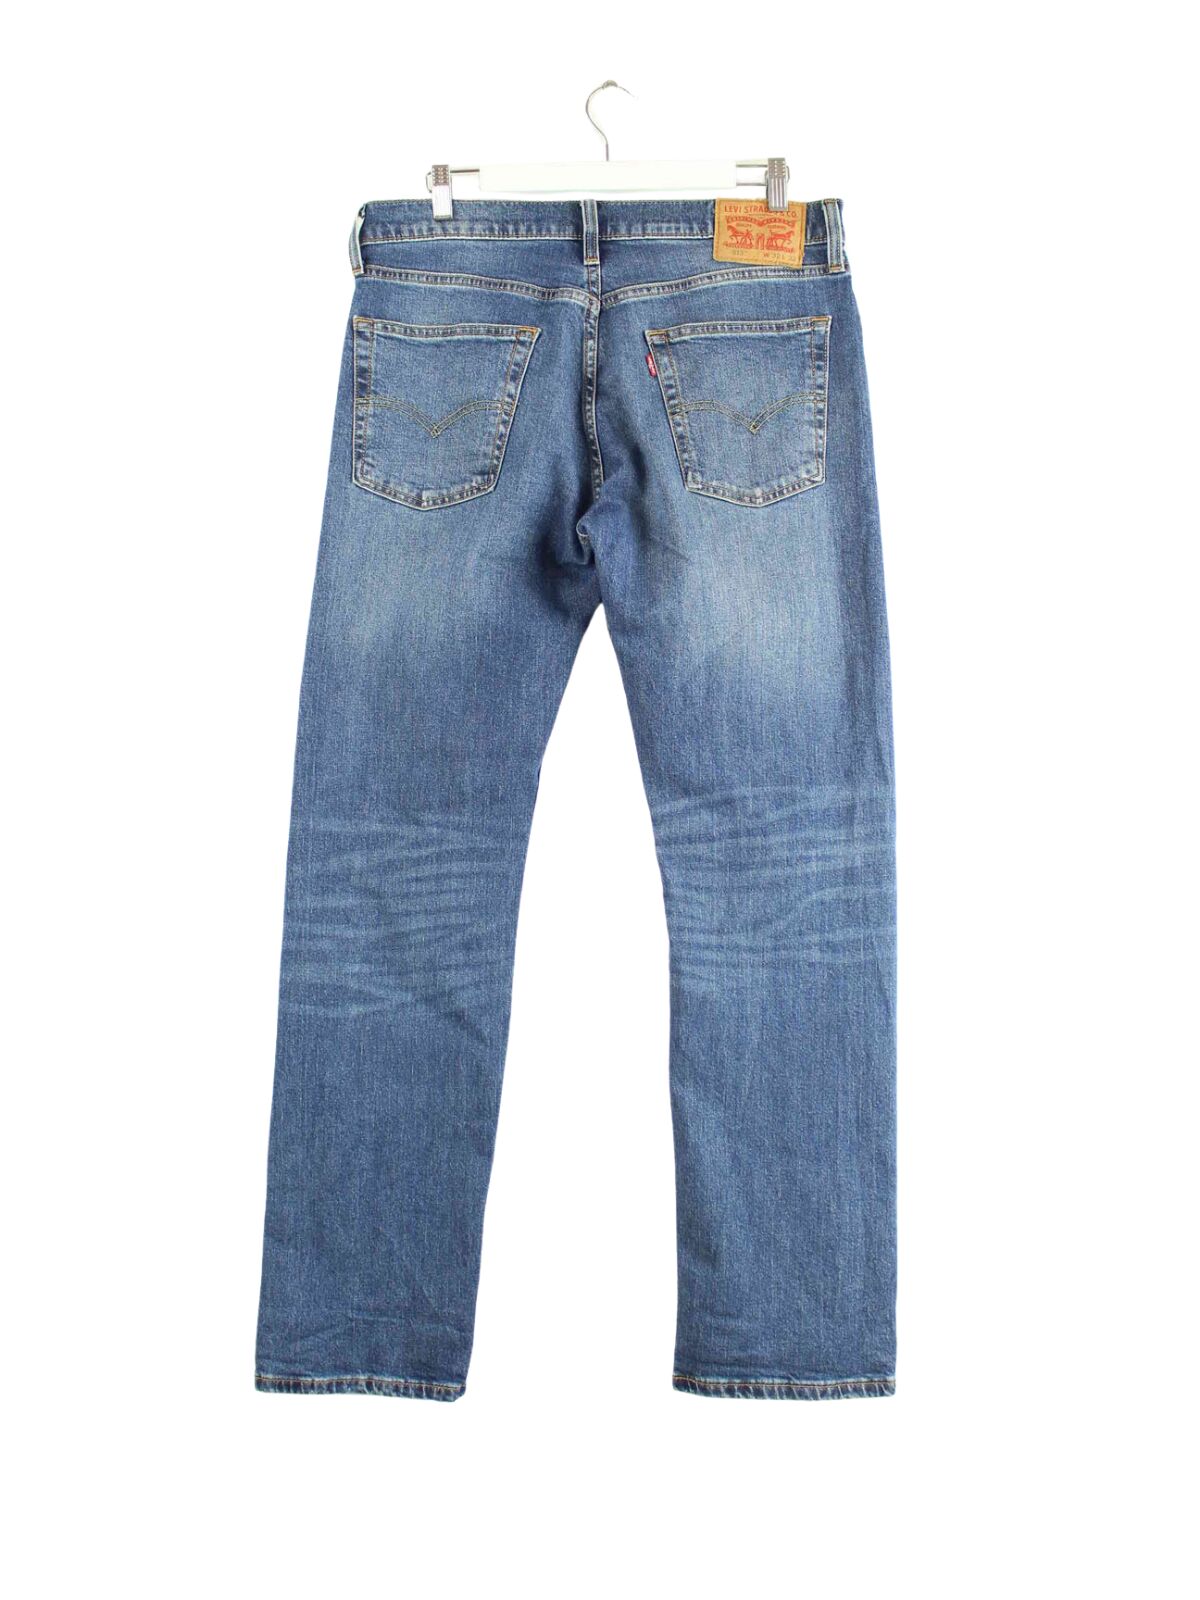 Levi's 513 Jeans Blau W32 L32 (back image)